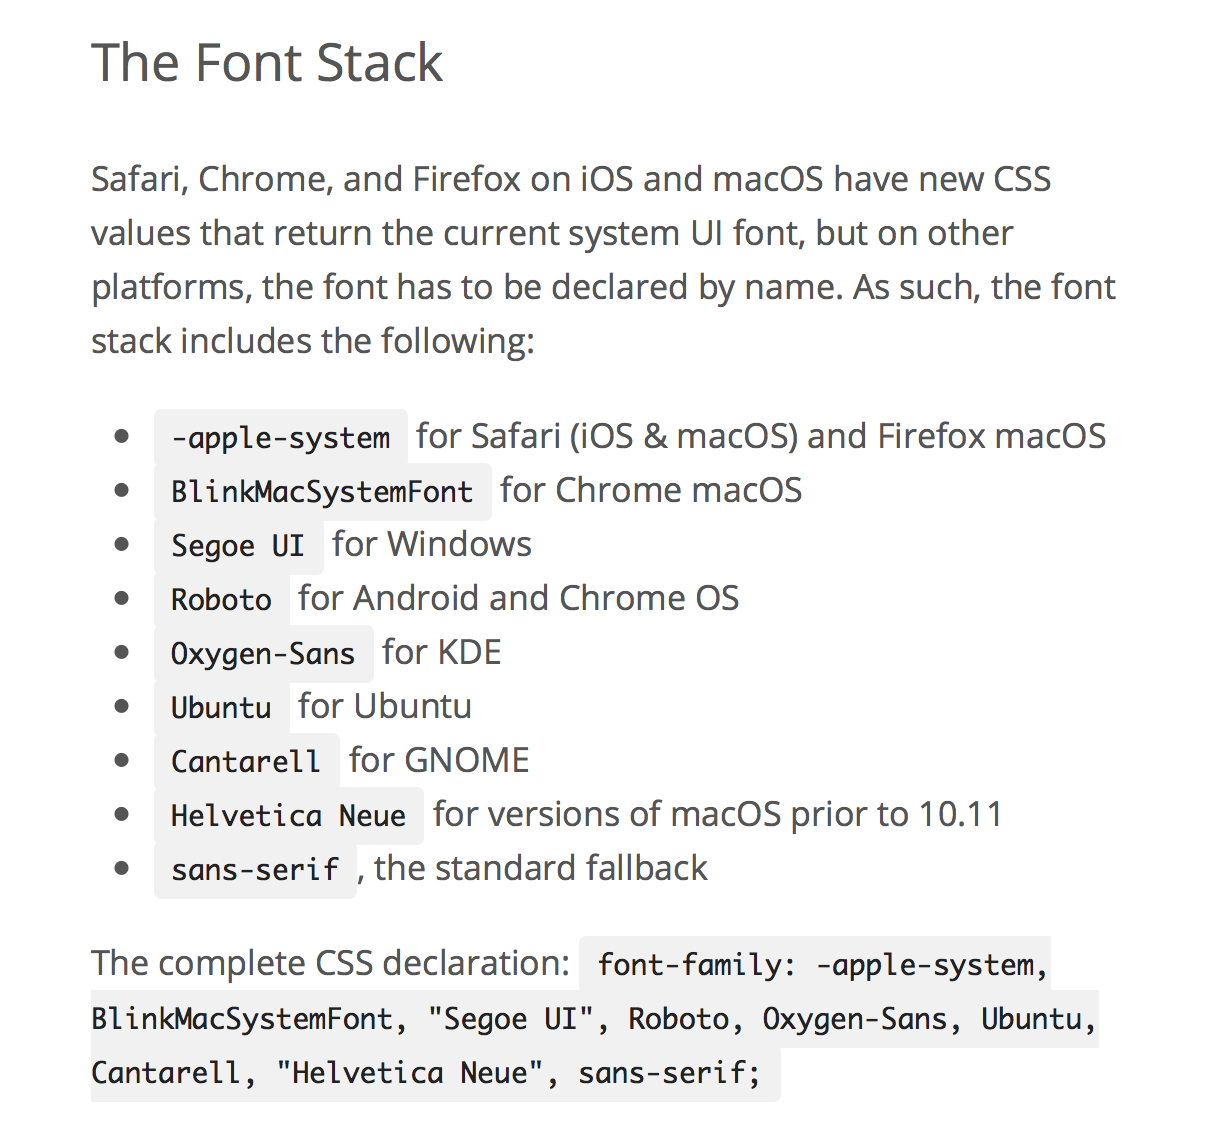 Le "native font stack" de WordPress 4.6